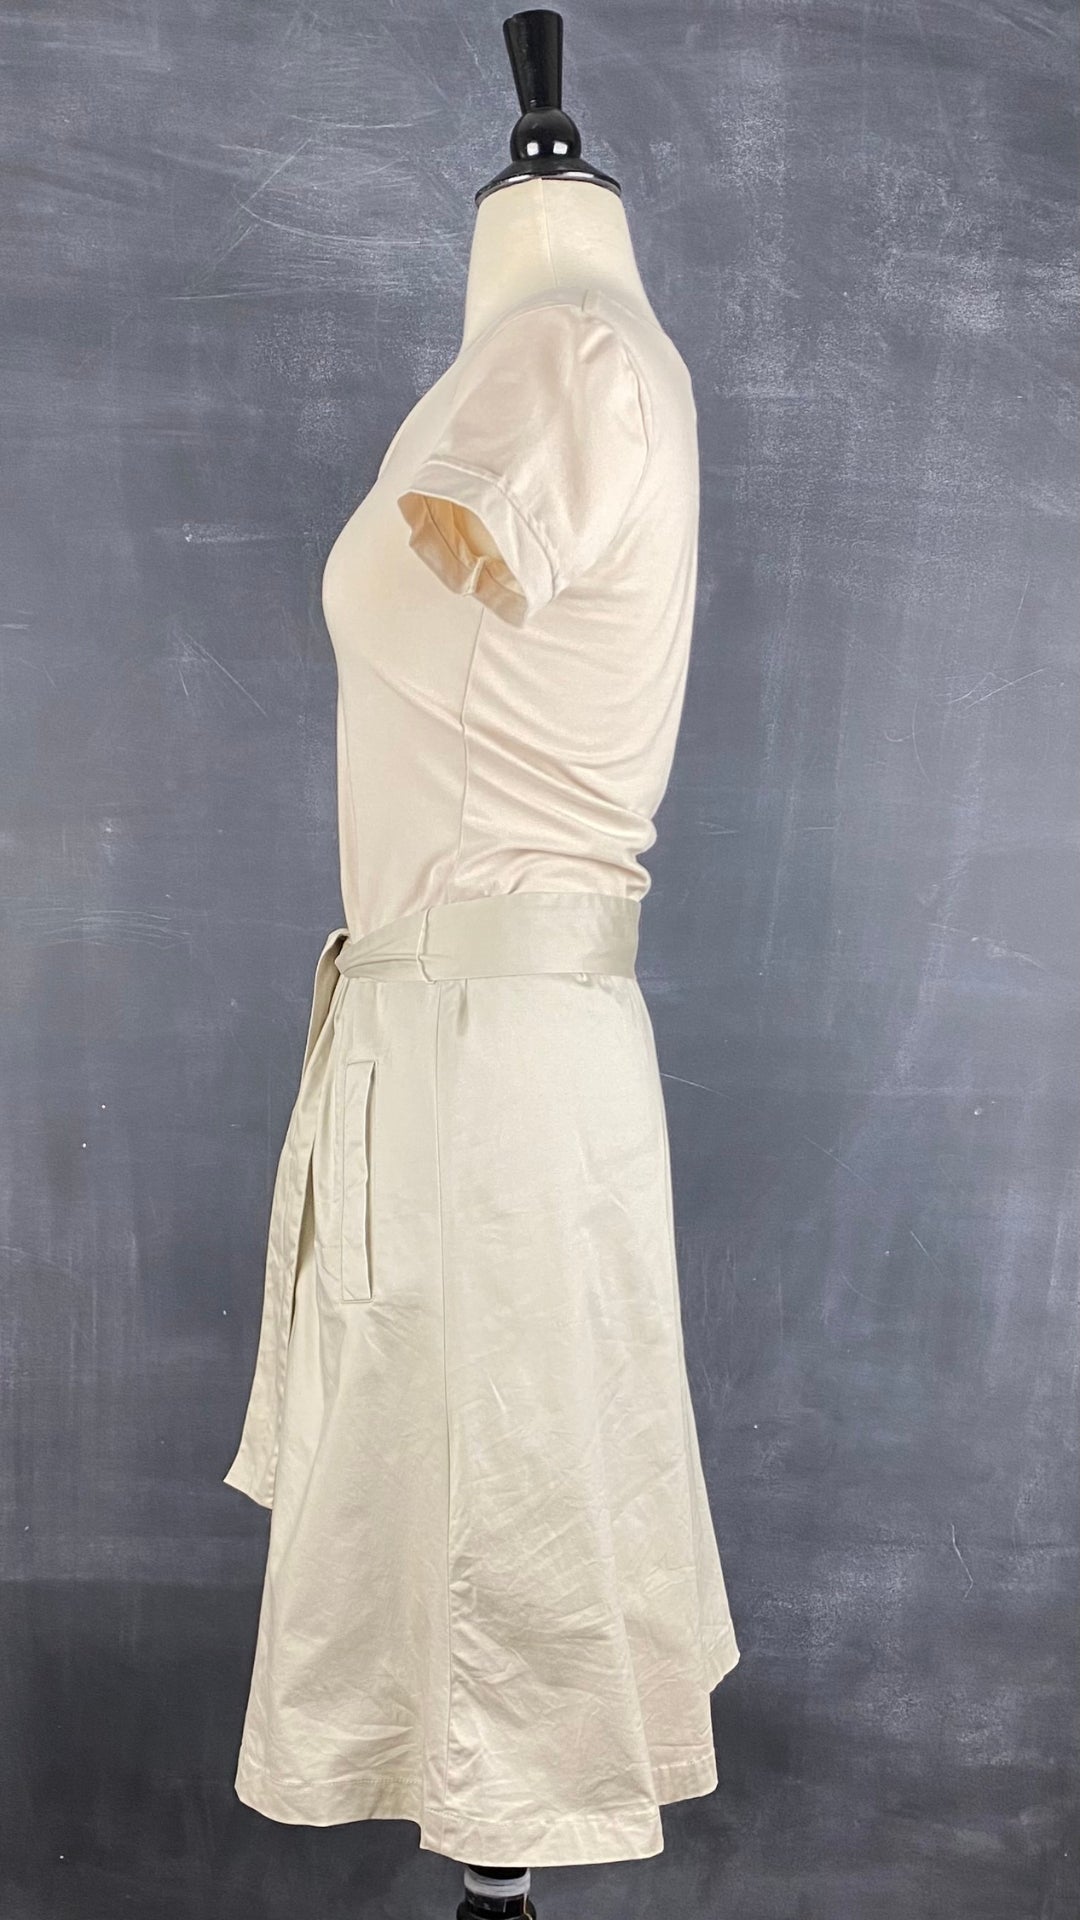 Robe greige bi-matière avec poches Tristan & Iseut, taille small. Vue de côté.